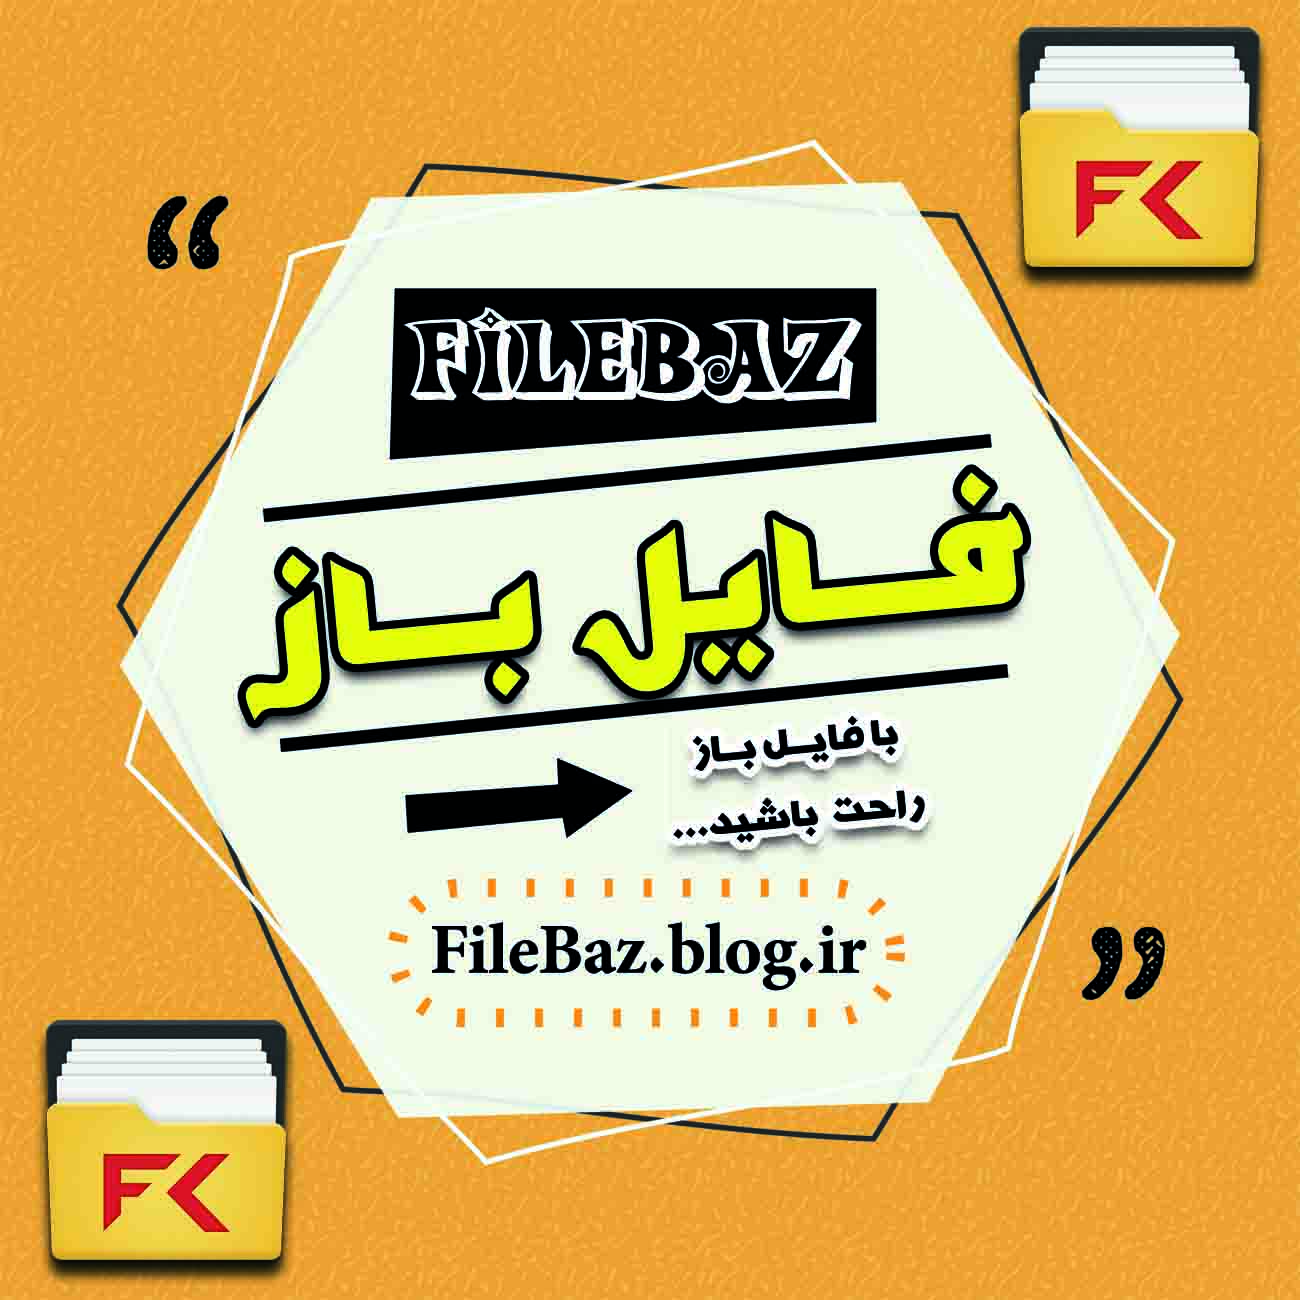 فایـــل بــاز | FileBaz